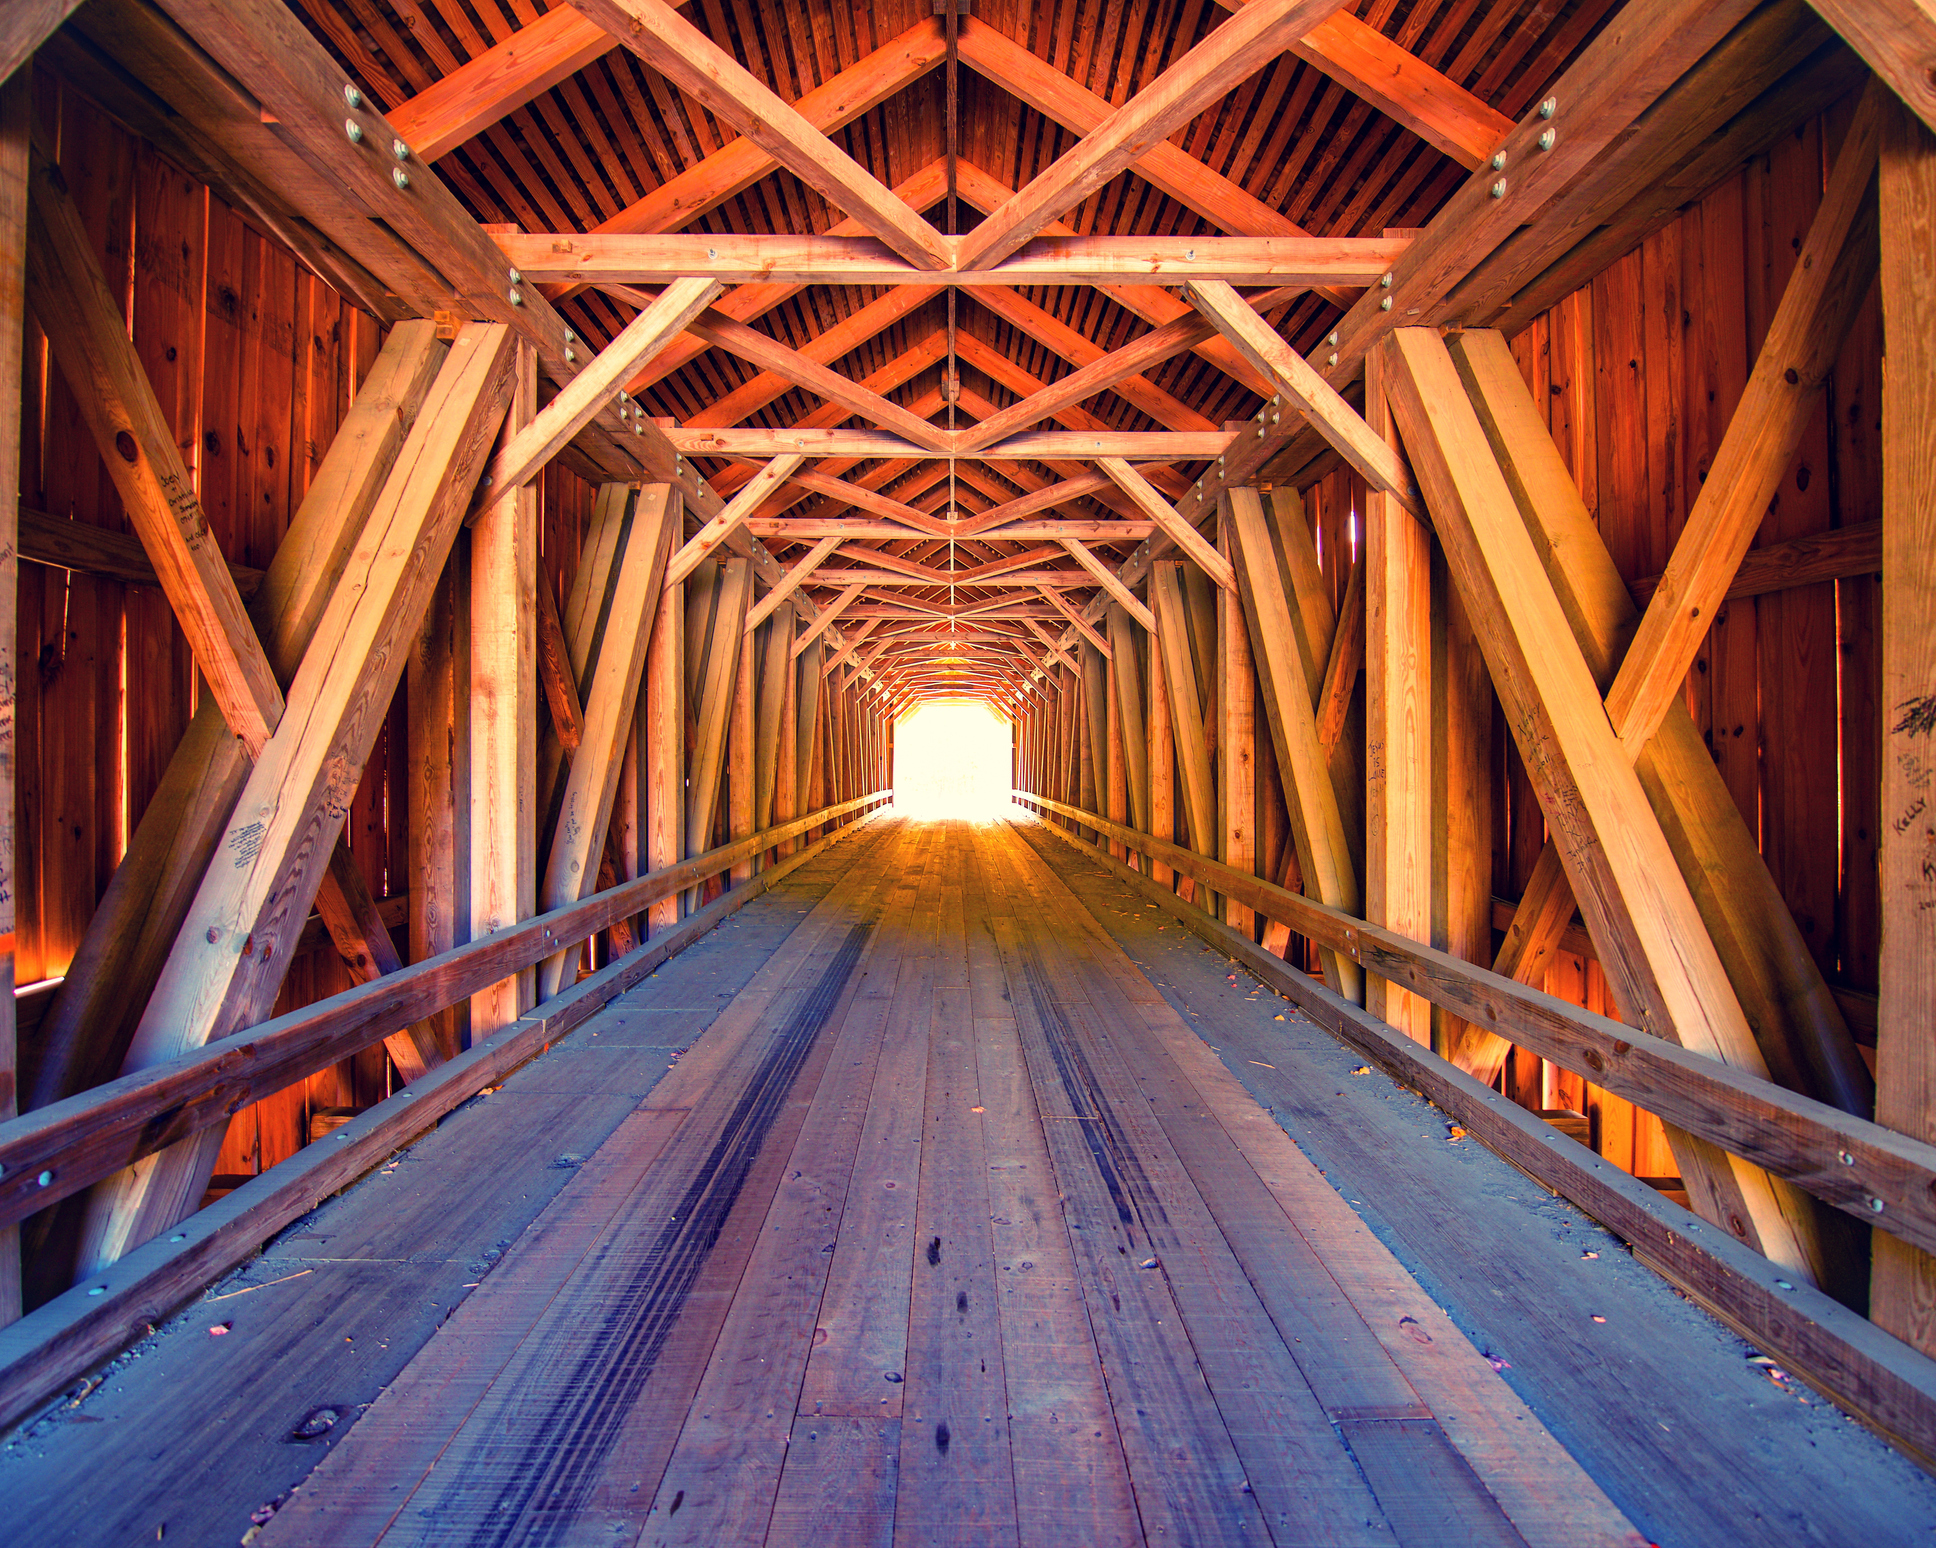 Luce alla fine del tunnel, all'interno del ponte coperto di legno nel Maine, Stati Uniti.